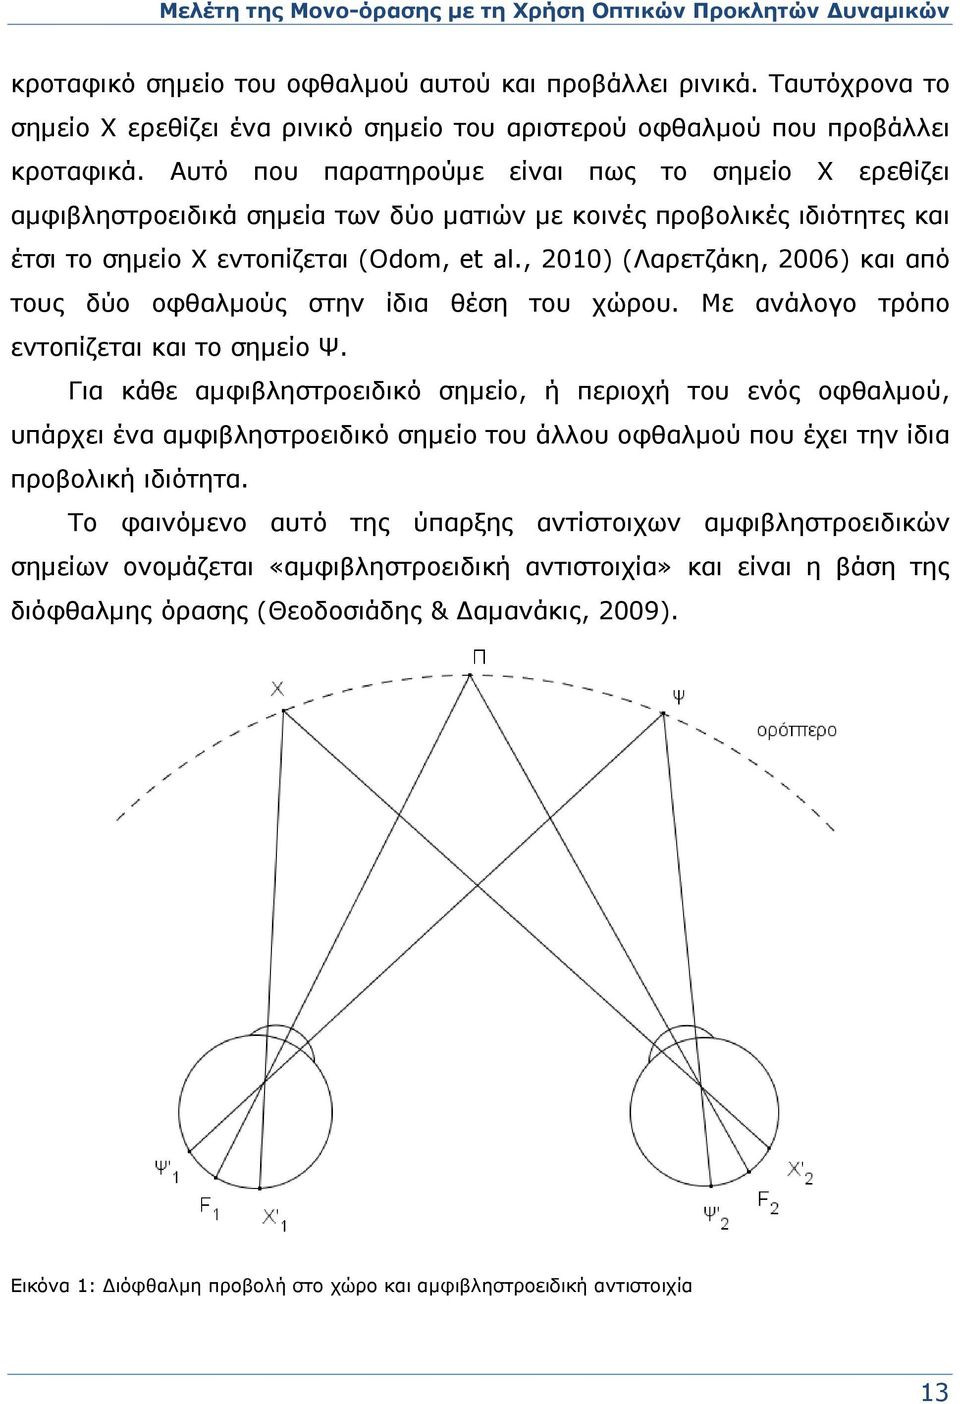 Αυτό που παρατηρούμε είναι πως το σημείο Χ ερεθίζει αμφιβληστροειδικά σημεία των δύο ματιών με κοινές προβολικές ιδιότητες και έτσι το σημείο Χ εντοπίζεται (Odom, et al.